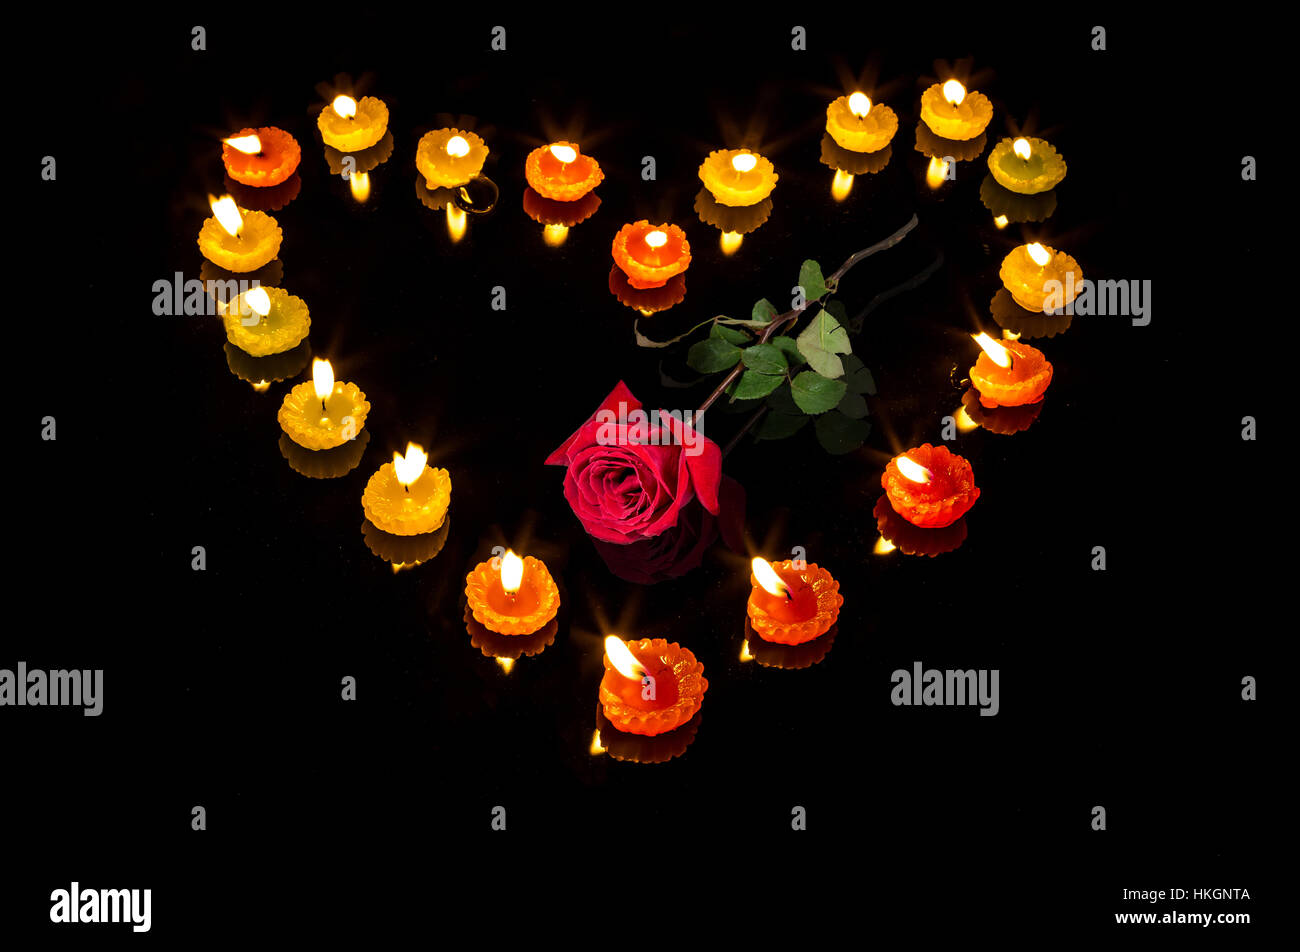 Romantische Valentines Tag Setup mit brennenden Kerzen in Herzform und eine rote Rose auf schwarzem Hintergrund - Liebesbeziehung. Stockfoto